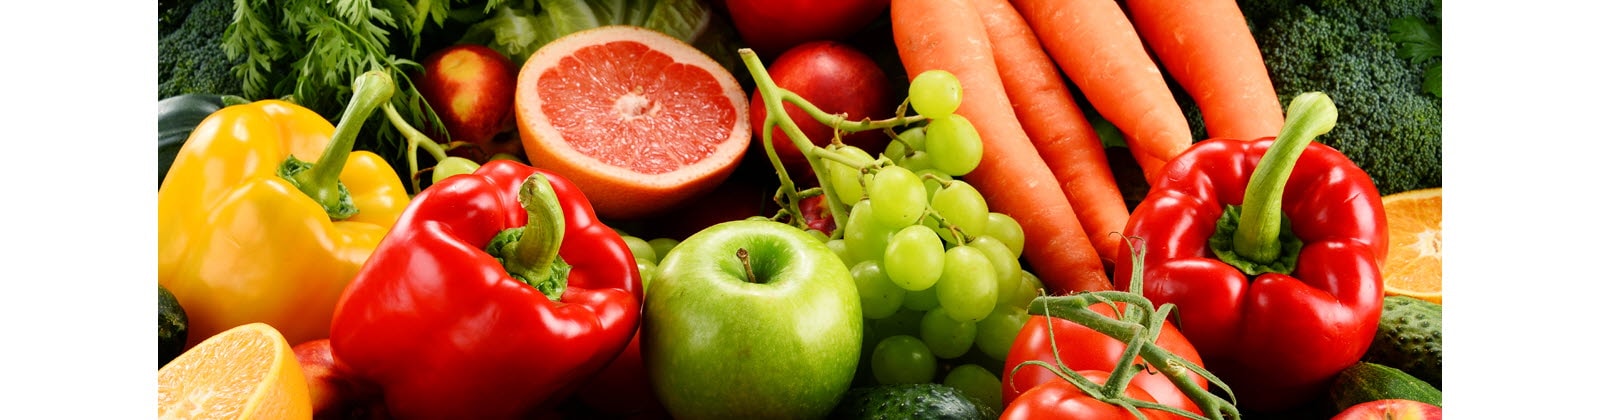 مجموعة مختارة من الفواكه والخضروات الطازجة ذات الألوان الزاهية.